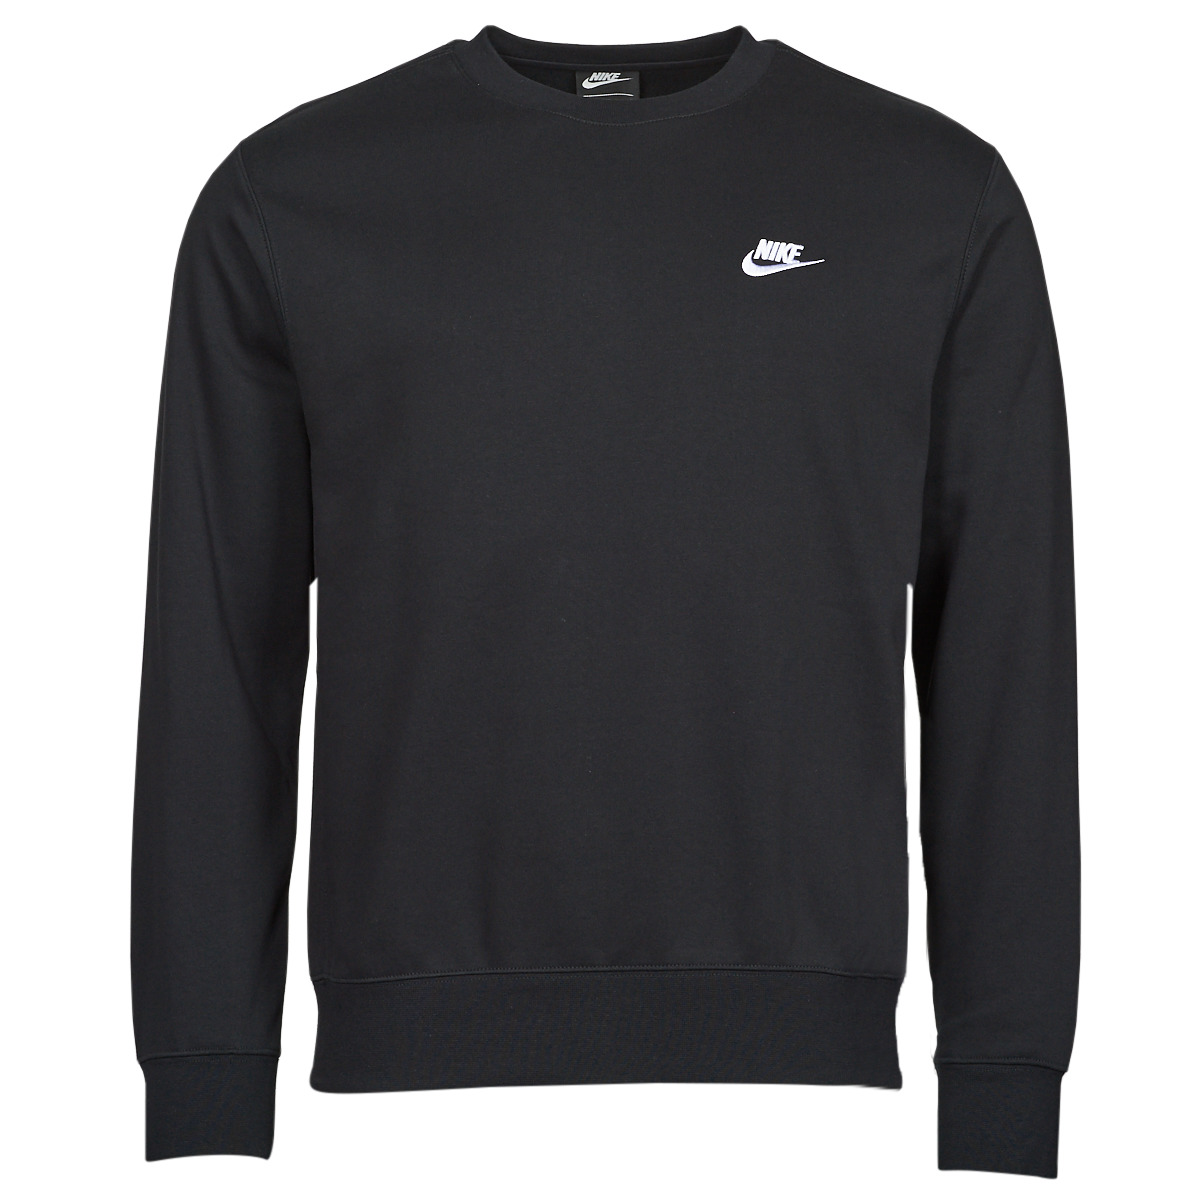 Nike - NSW Club Fleece Crew - Zwarte Sweater - XXL - Zwart